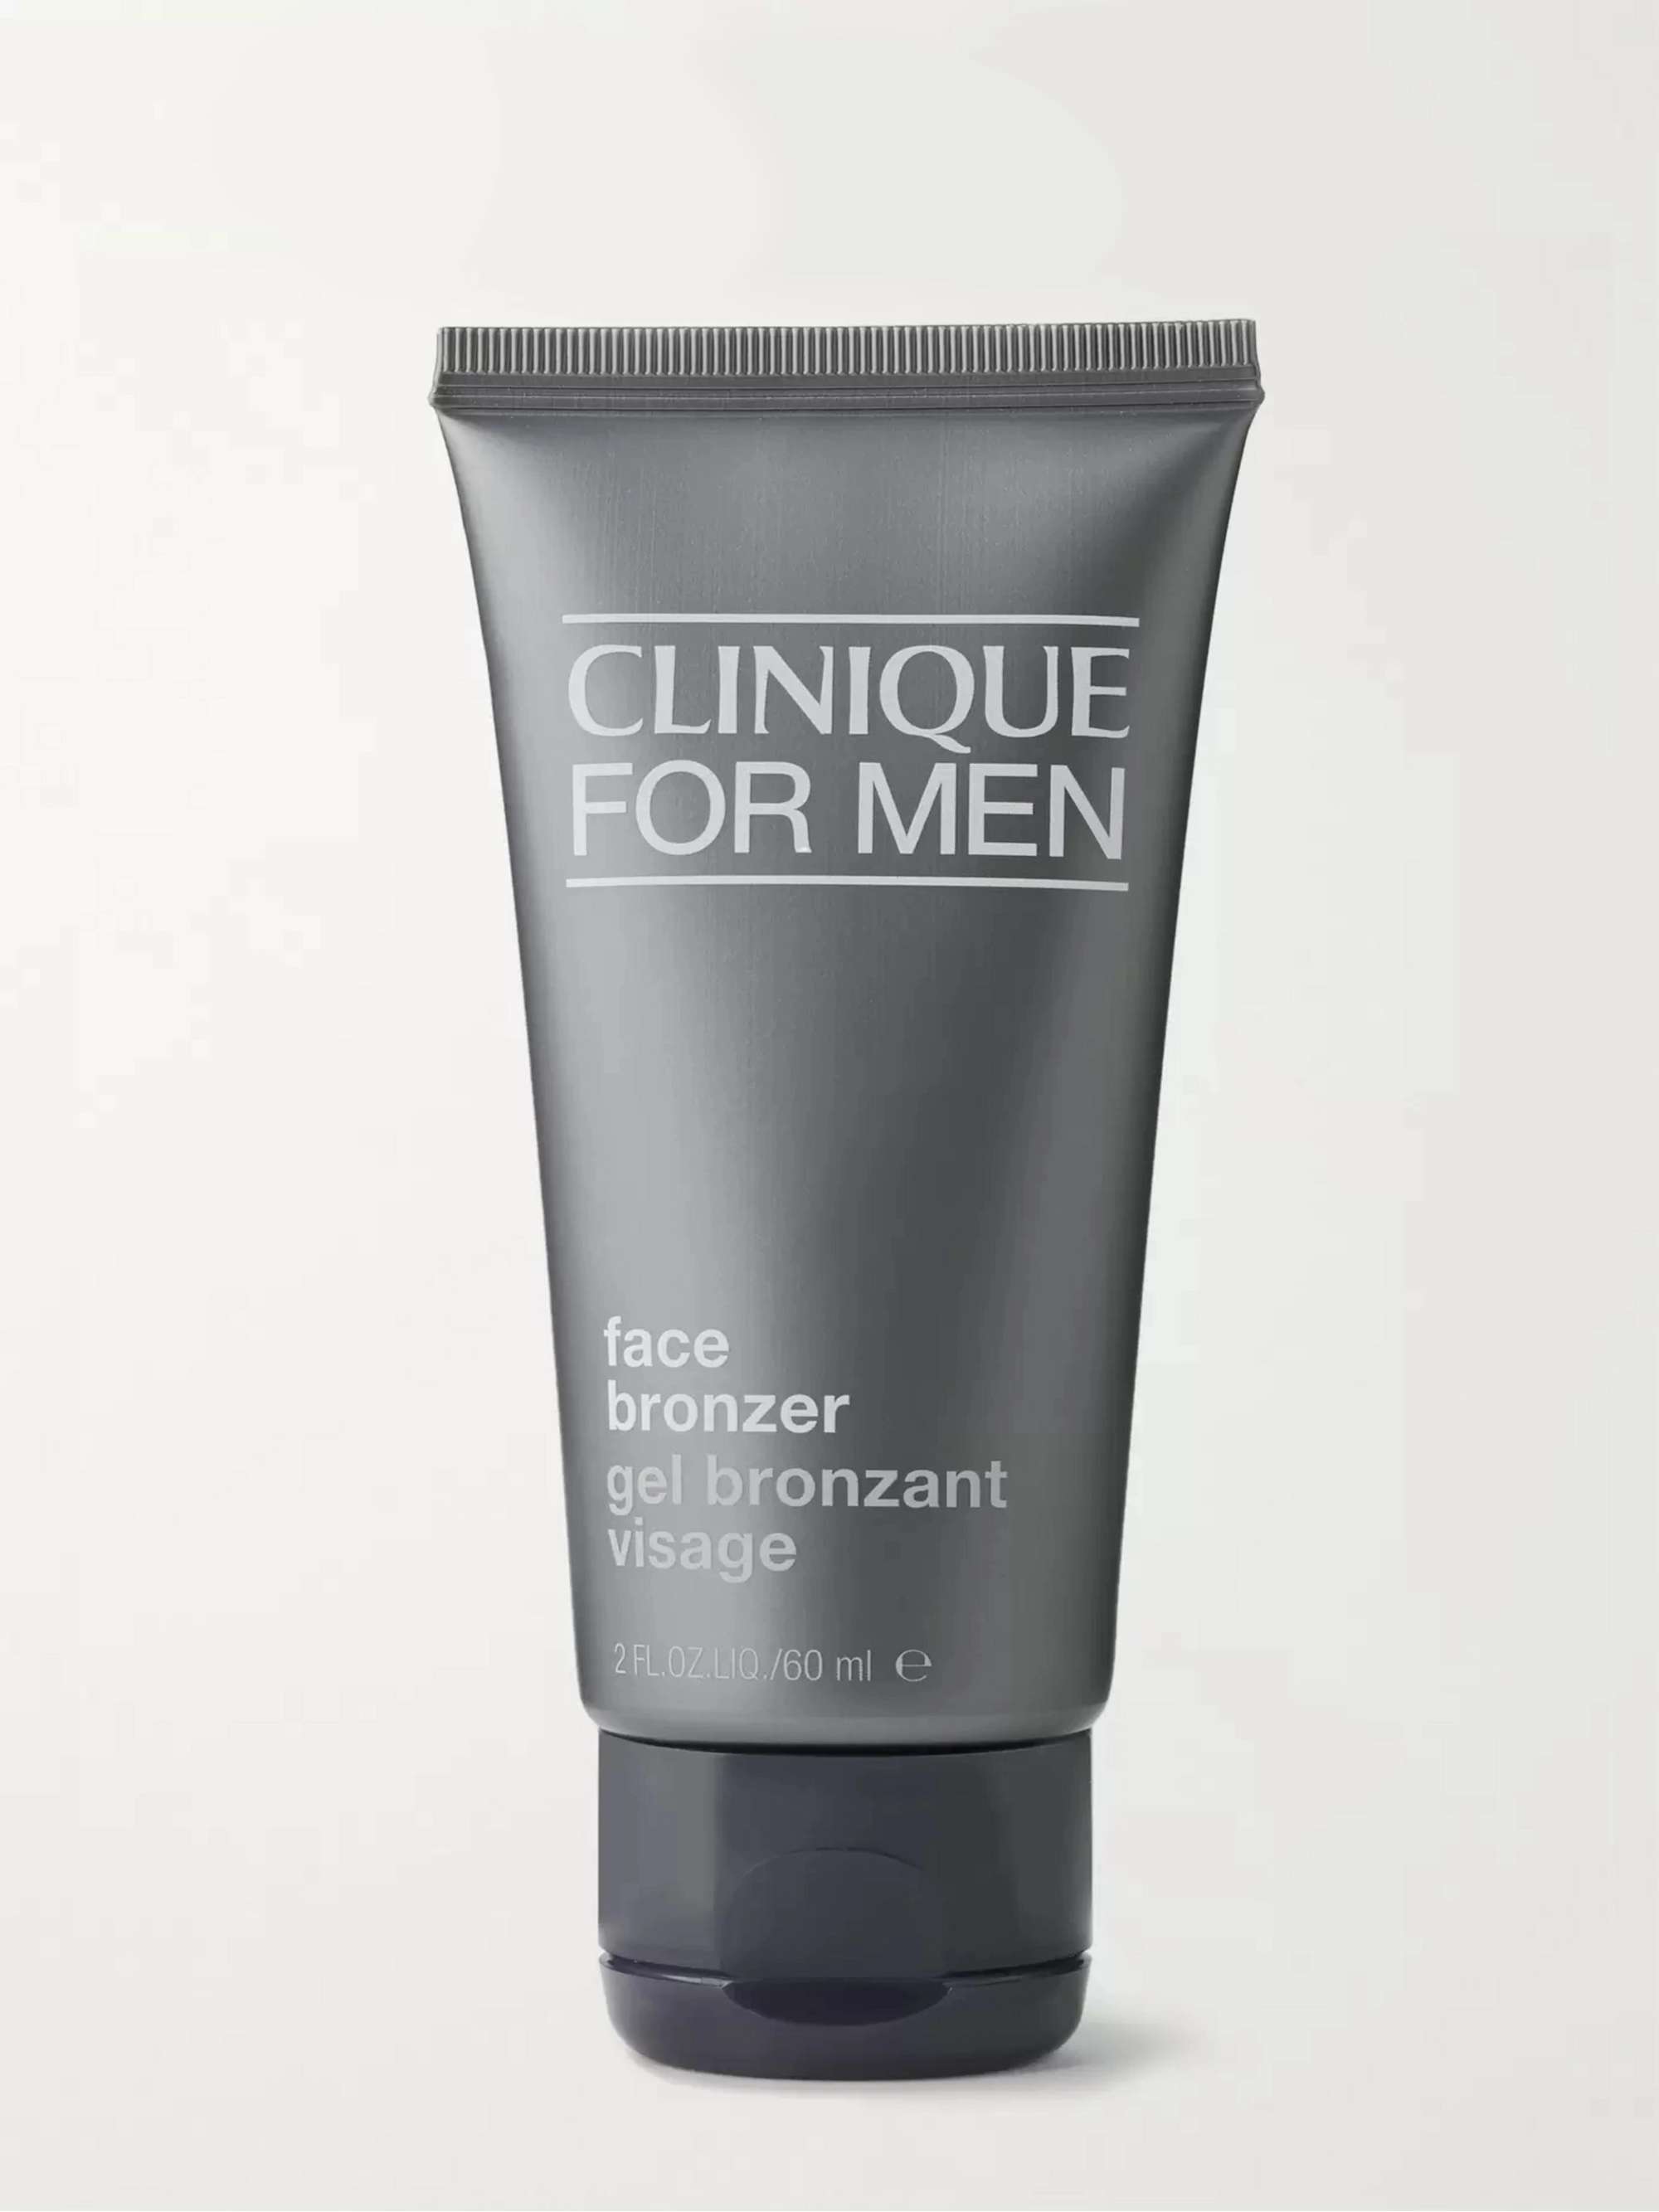 CLINIQUE FOR MEN Face Bronzer, 60ml